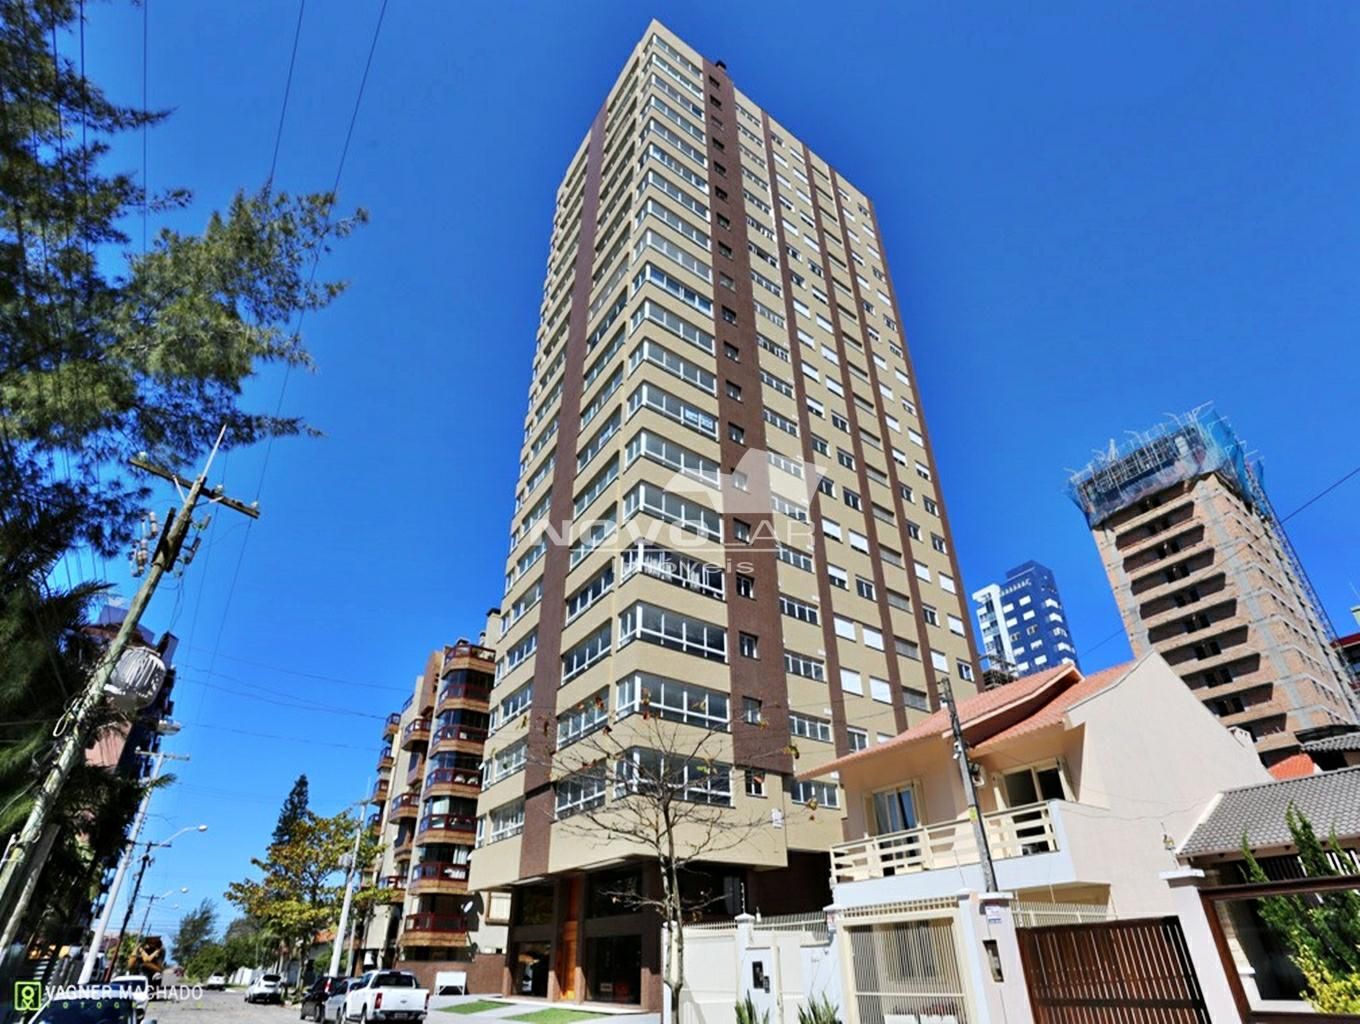 Apartamento com 4 dormitórios em Torres, no bairro Praia Grande à venda